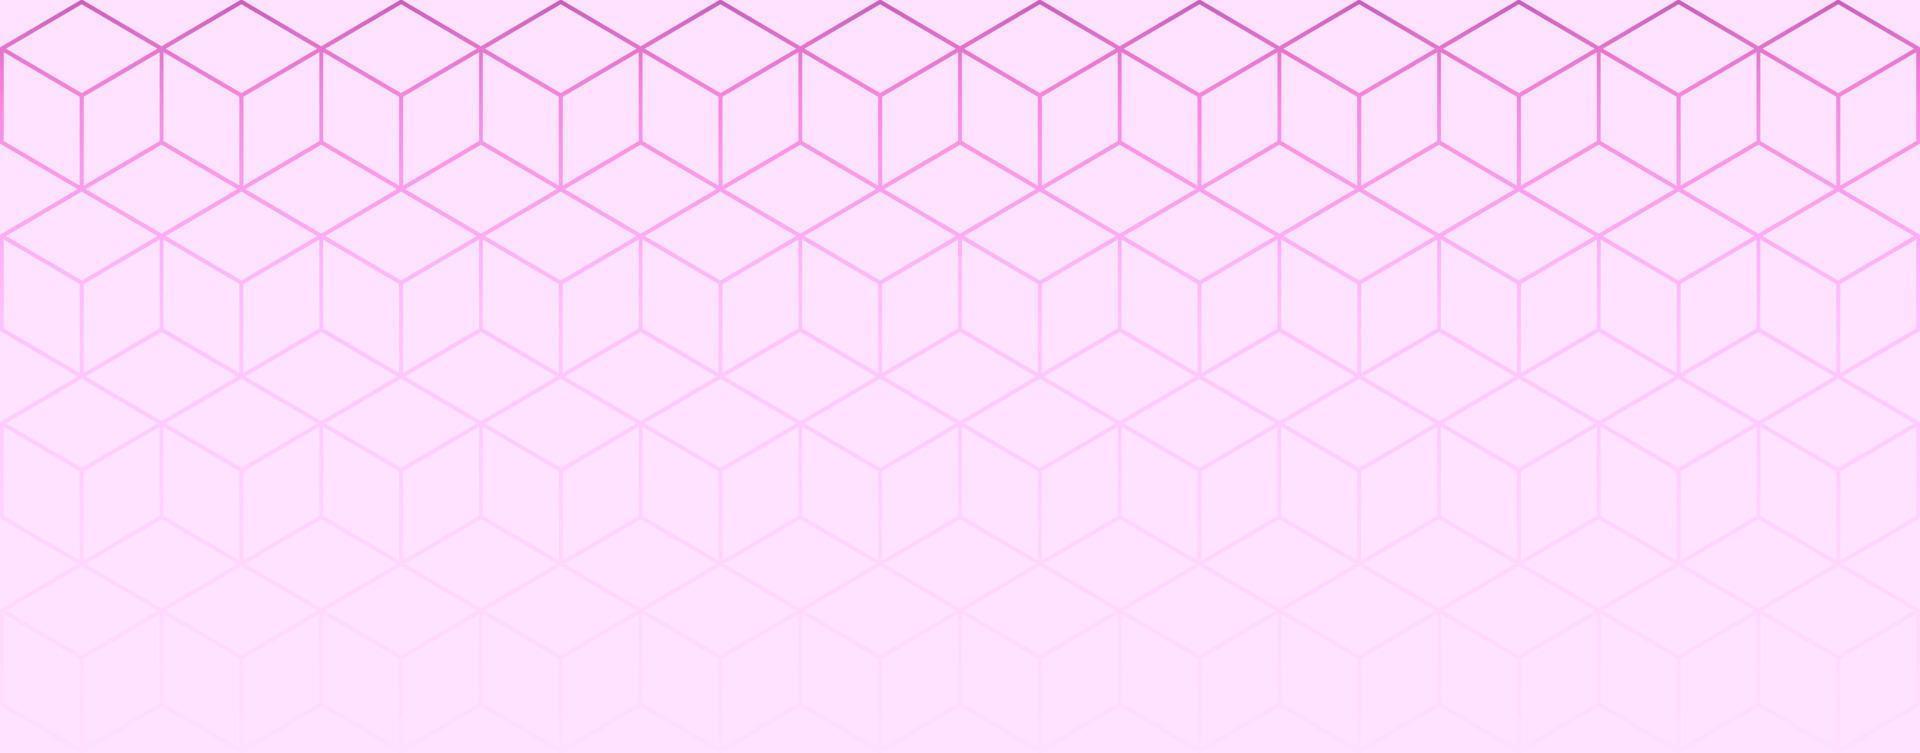 abstrakter geometrischer hintergrund mit isometrischen würfelmustern mit verlaufsumrissen in hellrosa coloros vektor